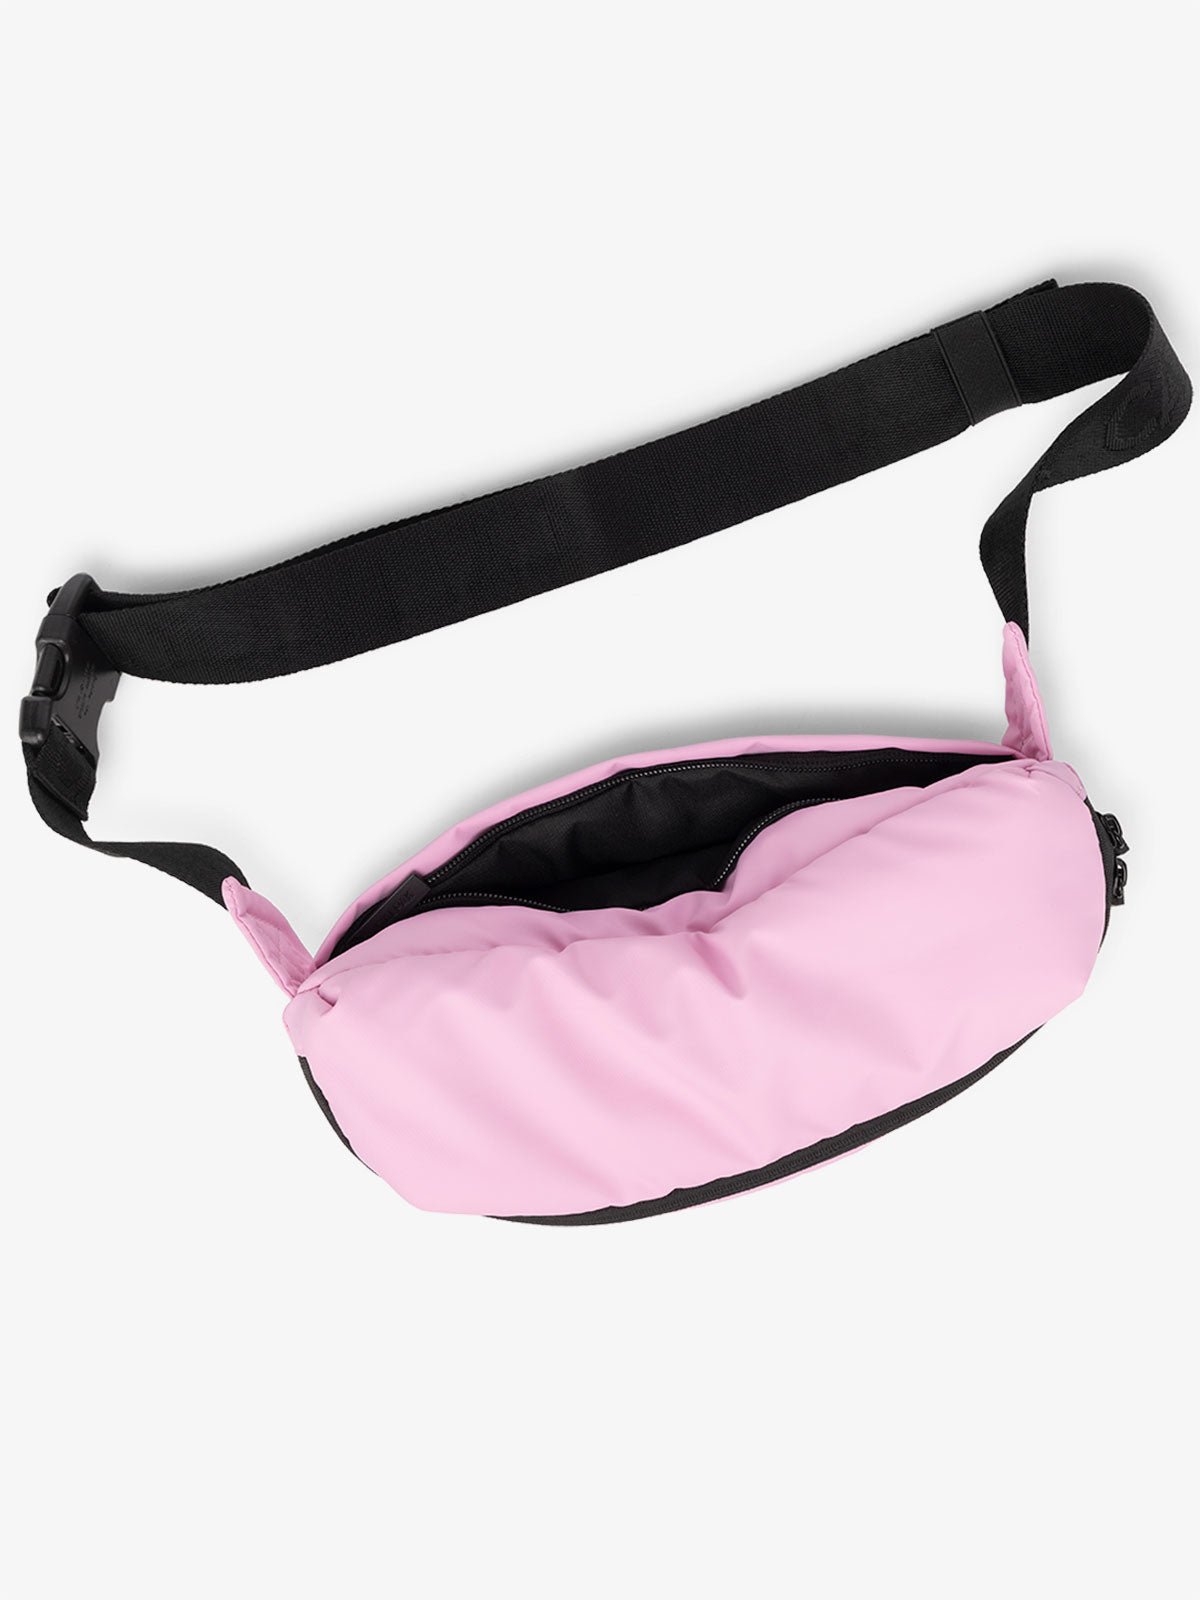 CALPAK Luka Belt Bag with adjustable strap and back pocket in bubblegum pink